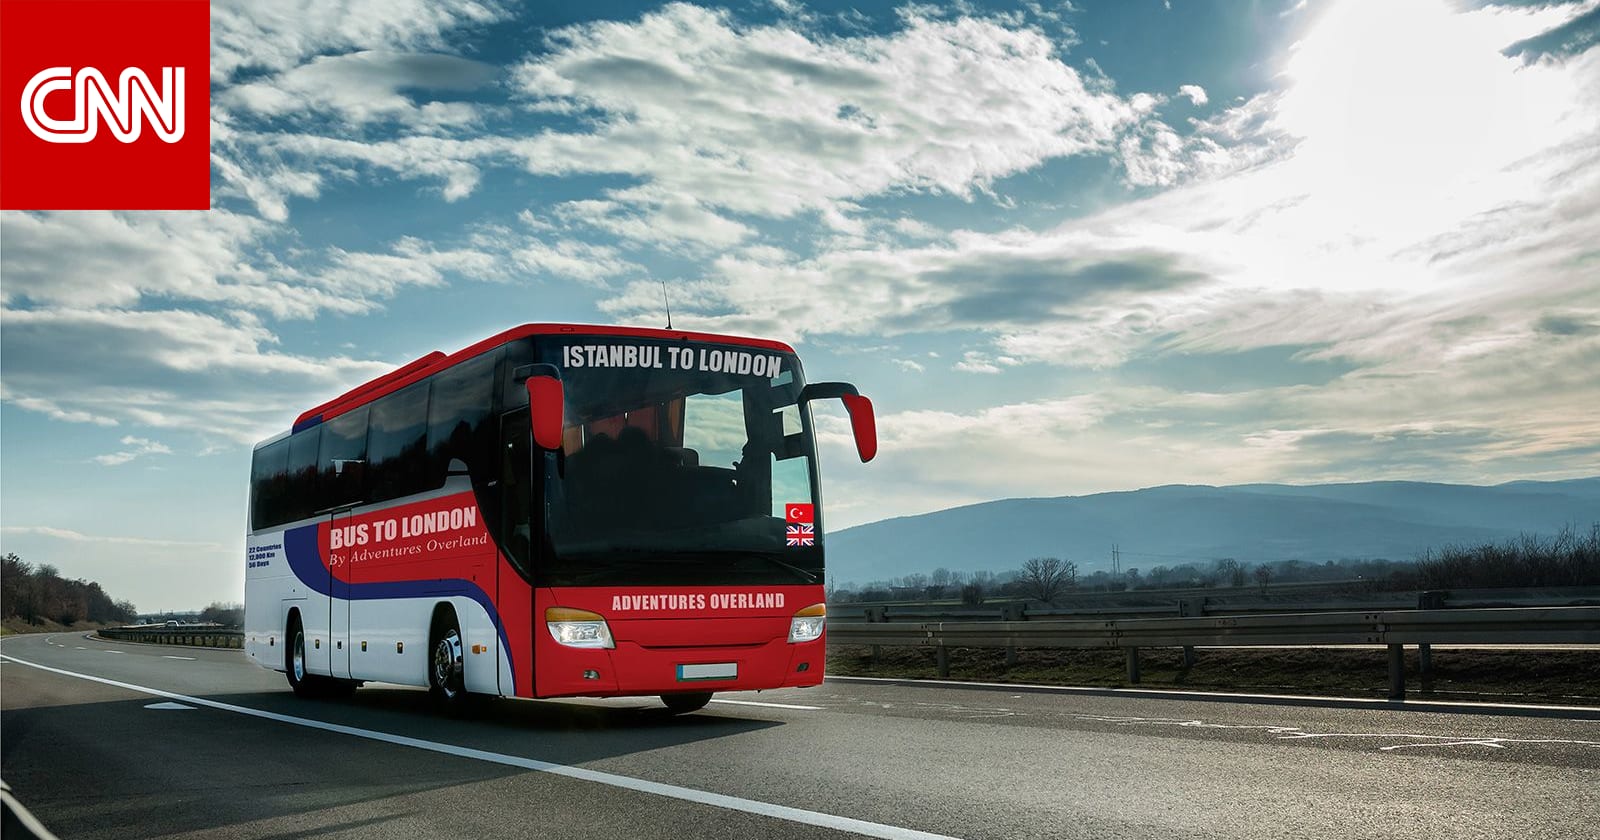 "أطول رحلة عبر حافلة في العالم" من تركيا إلى بريطانيا تستعد للانطلاق 1